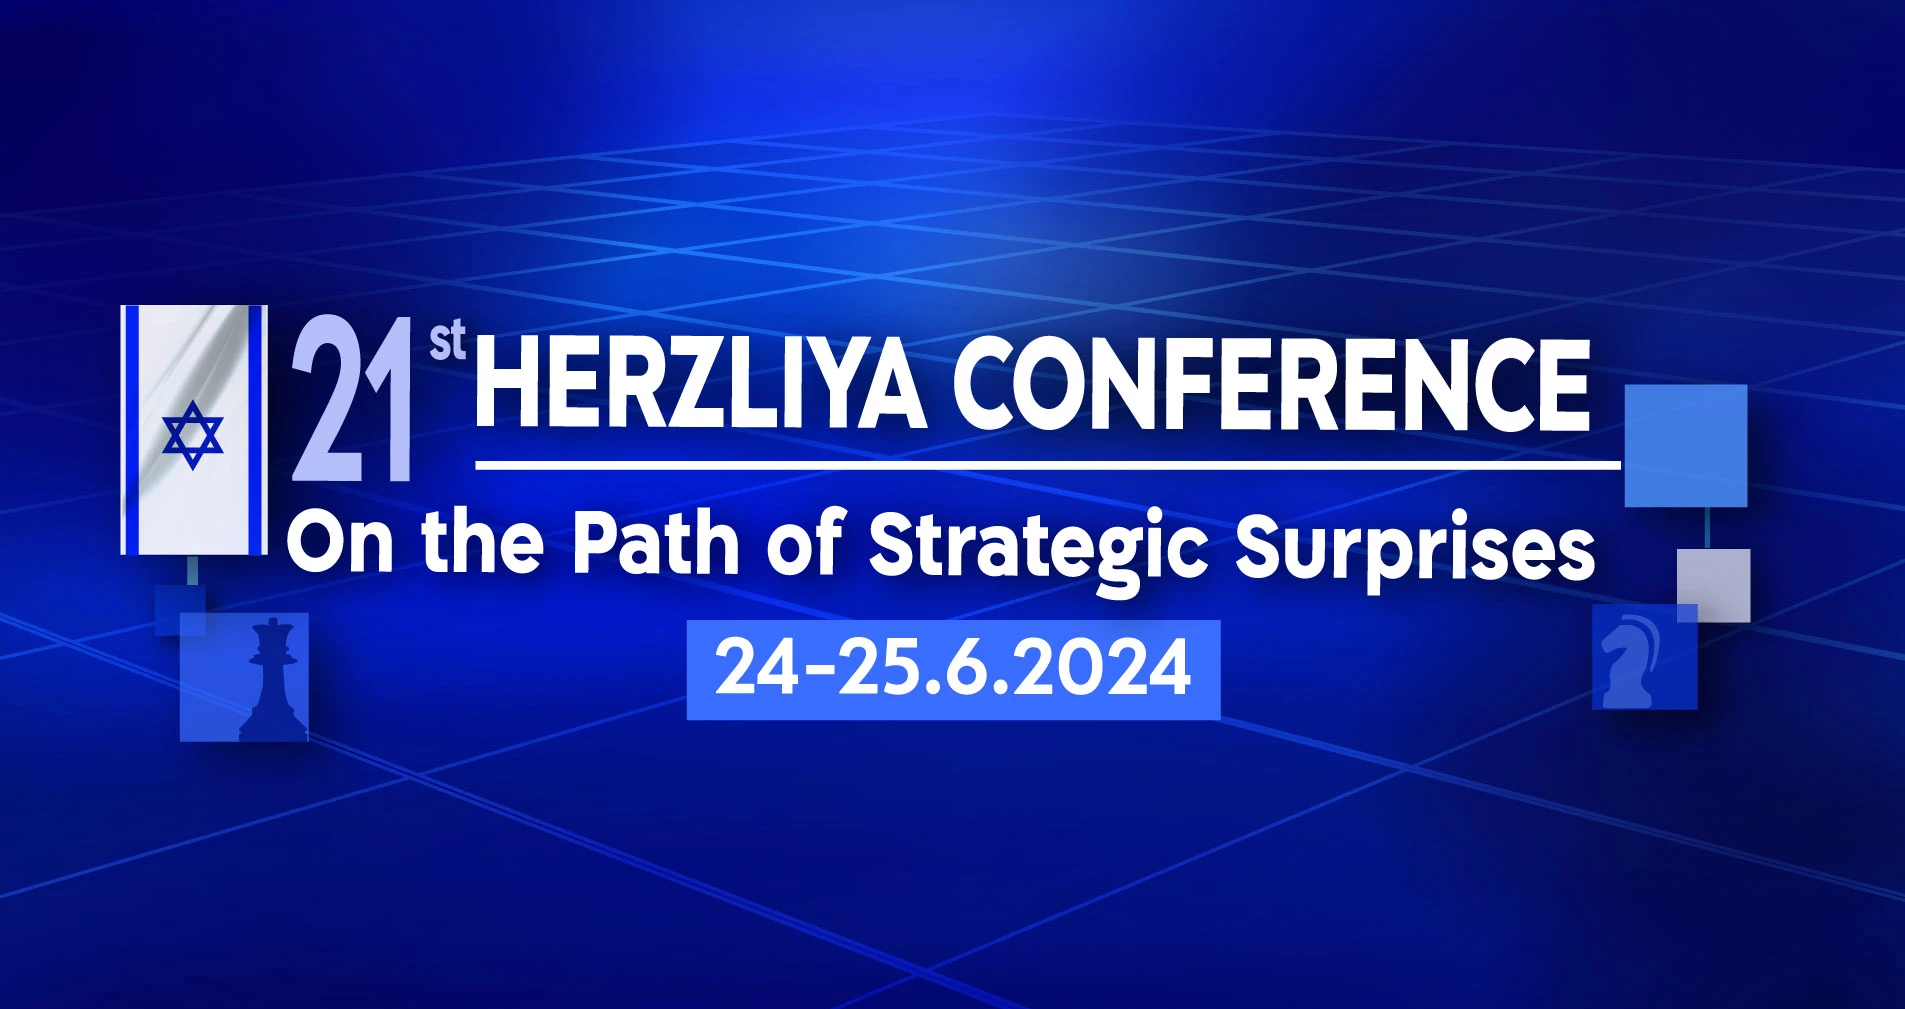 الجديد في مؤتمر “هرتسيليا” للعام الجاري 2024